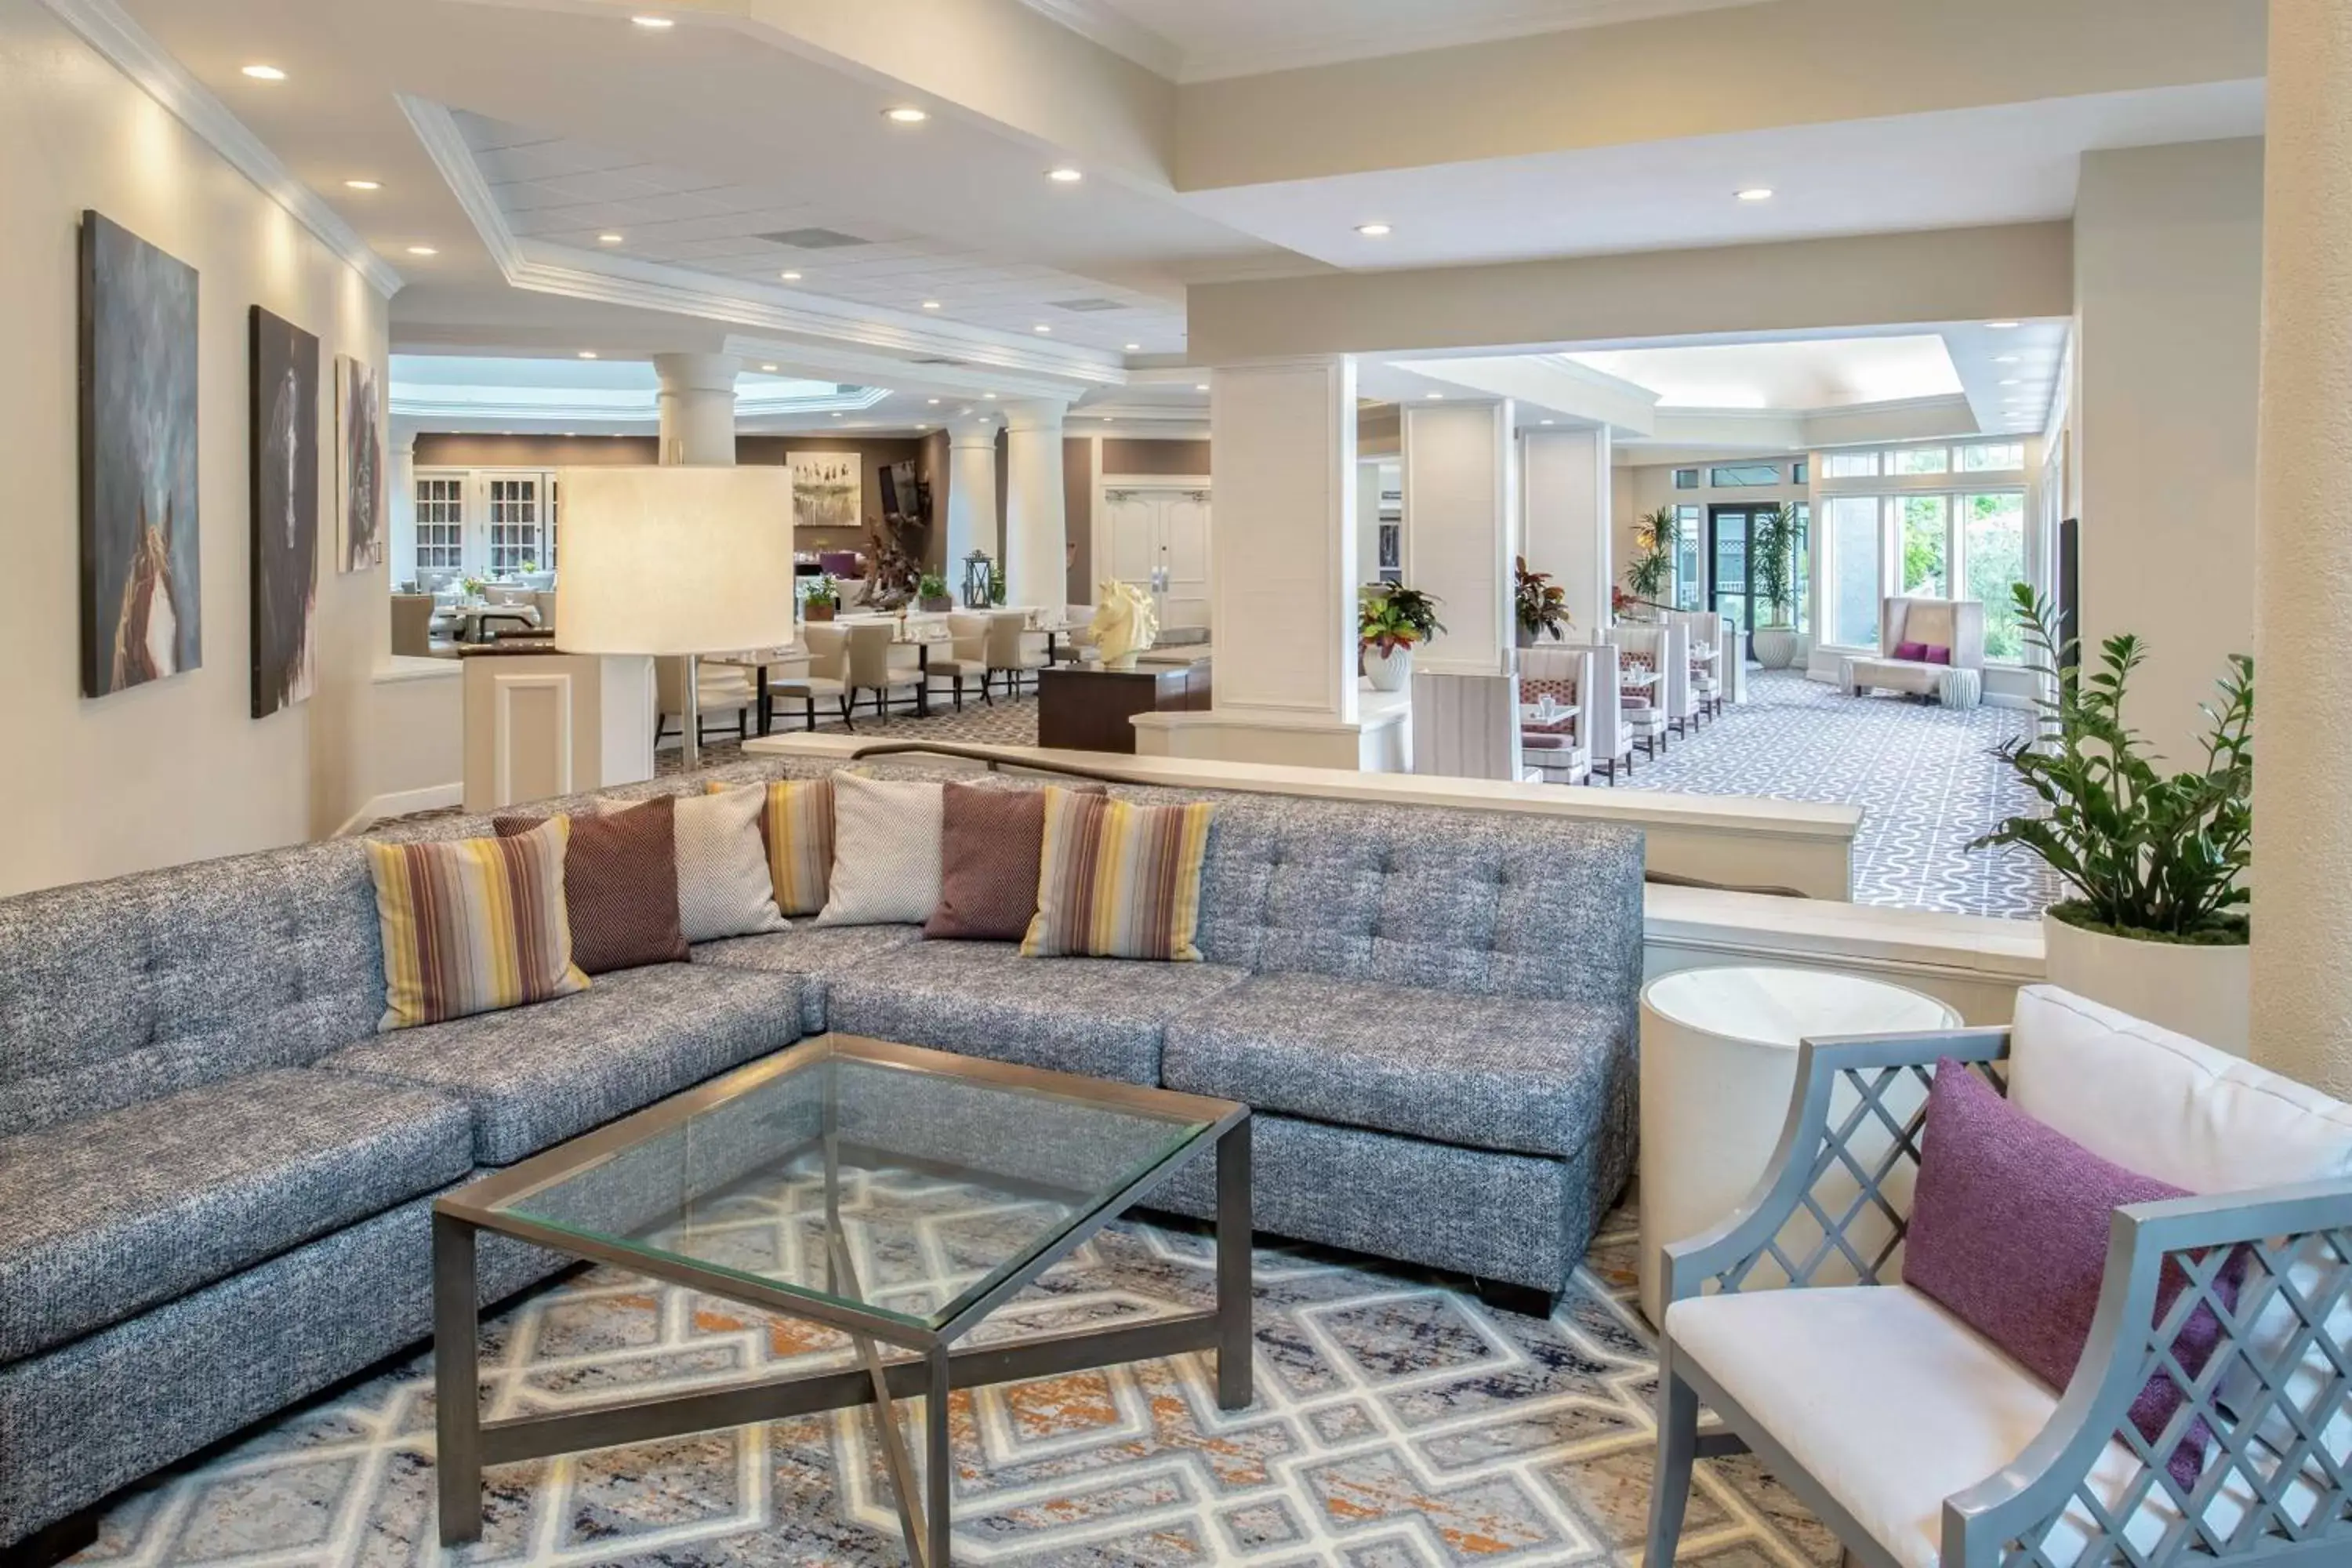 Lobby or reception, Lobby/Reception in Hilton San Diego/Del Mar